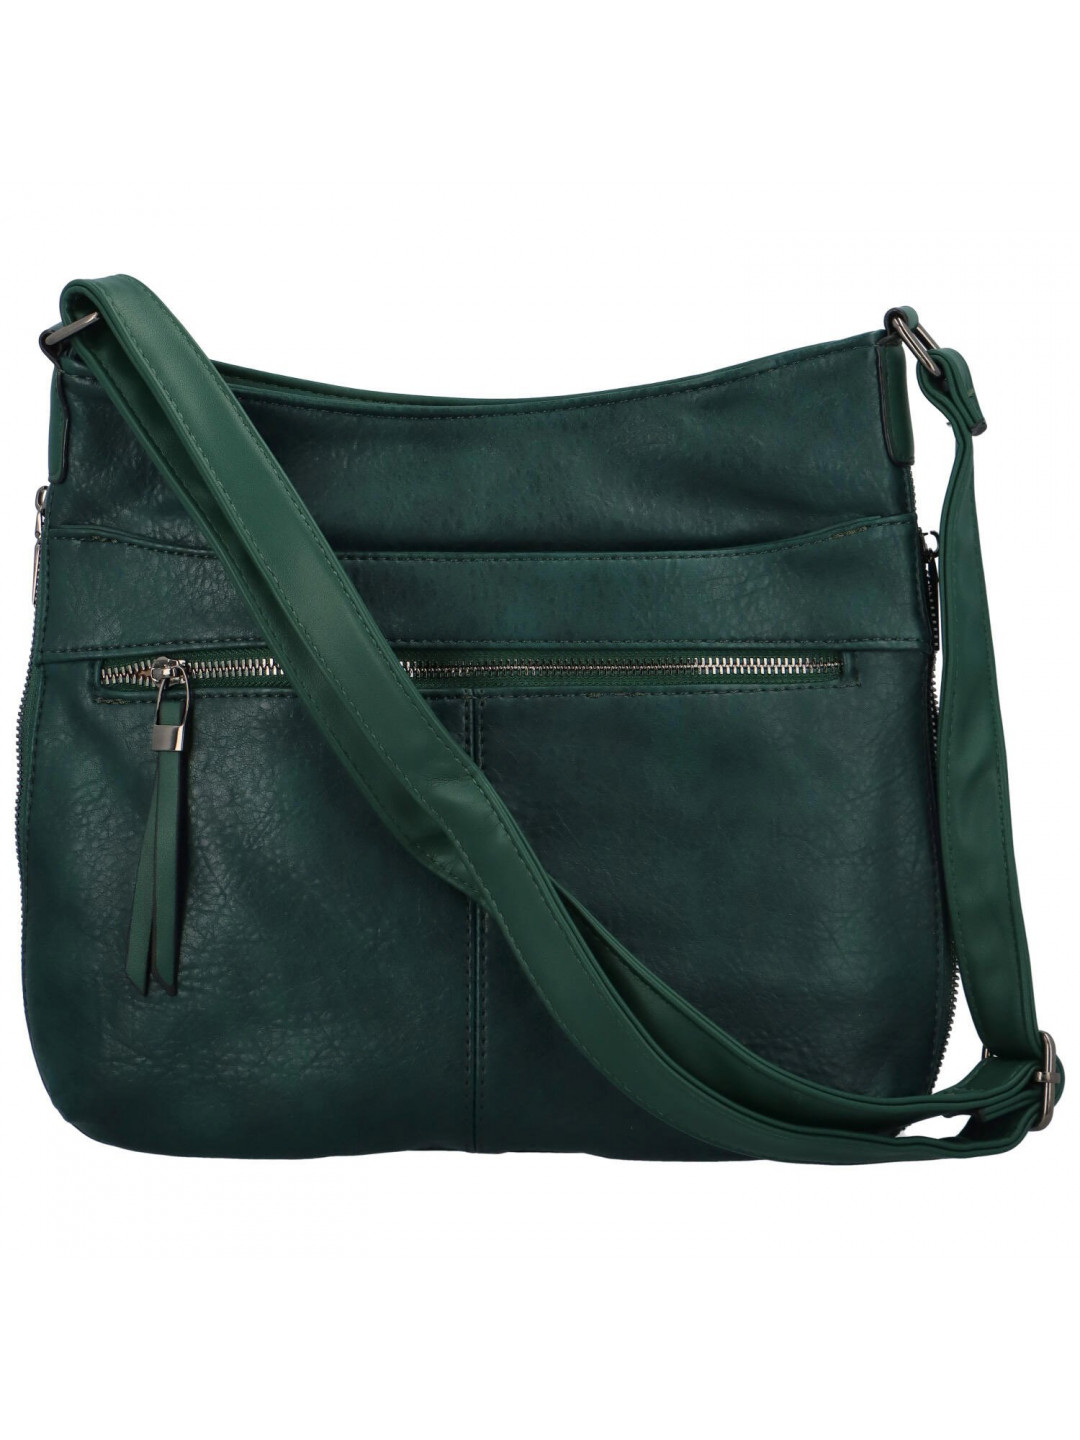 Dámská kabelka přes rameno zelená – Romina & Co Bags Fallon